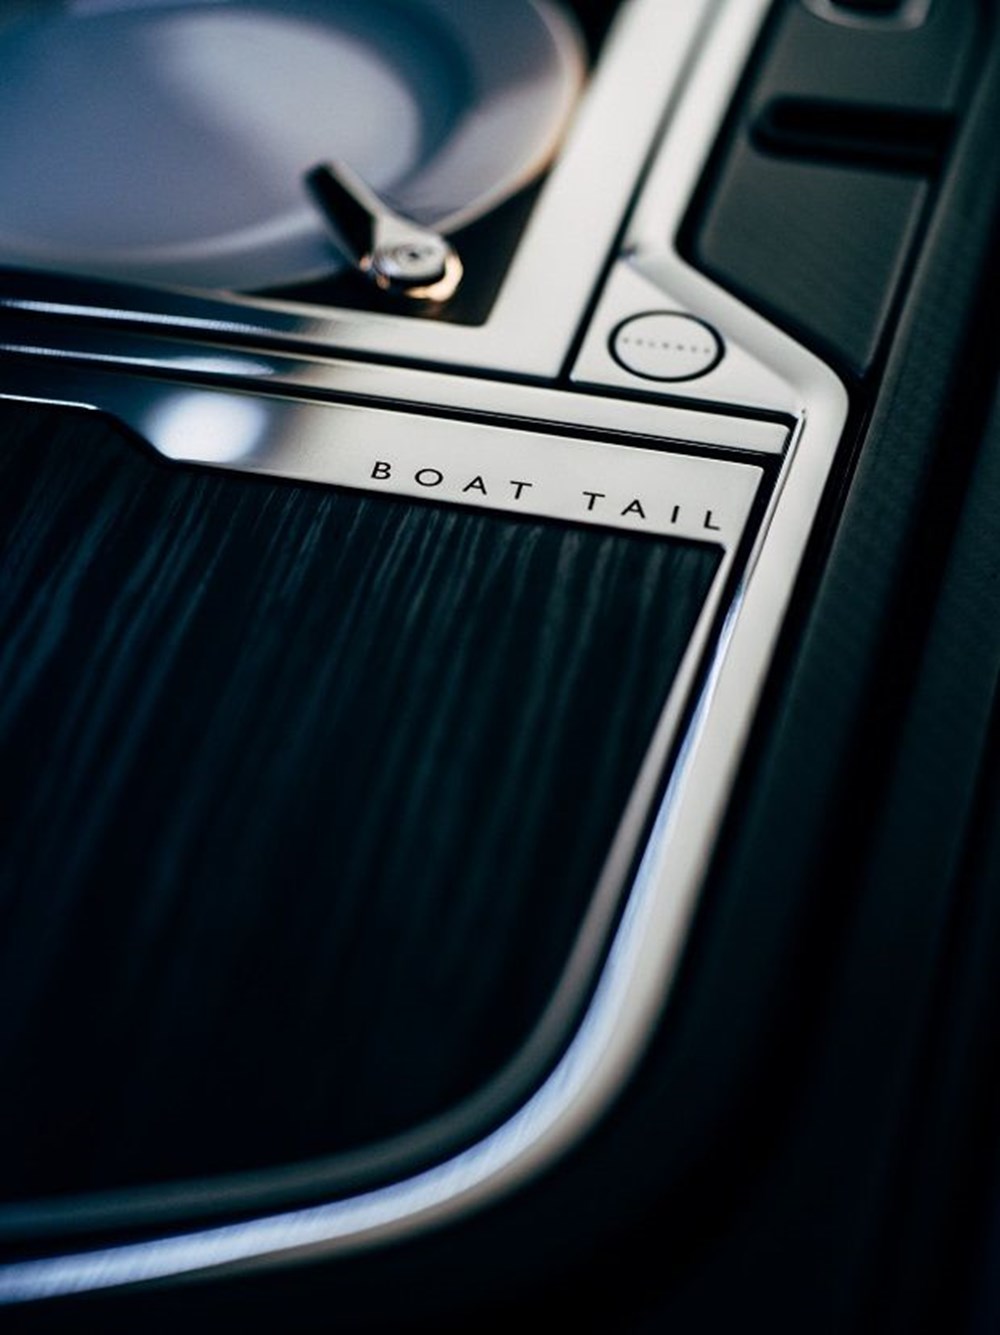 Dünyanın en pahalı otomobili: Rolls-Royce Boat Tail tanıtıldı - 10